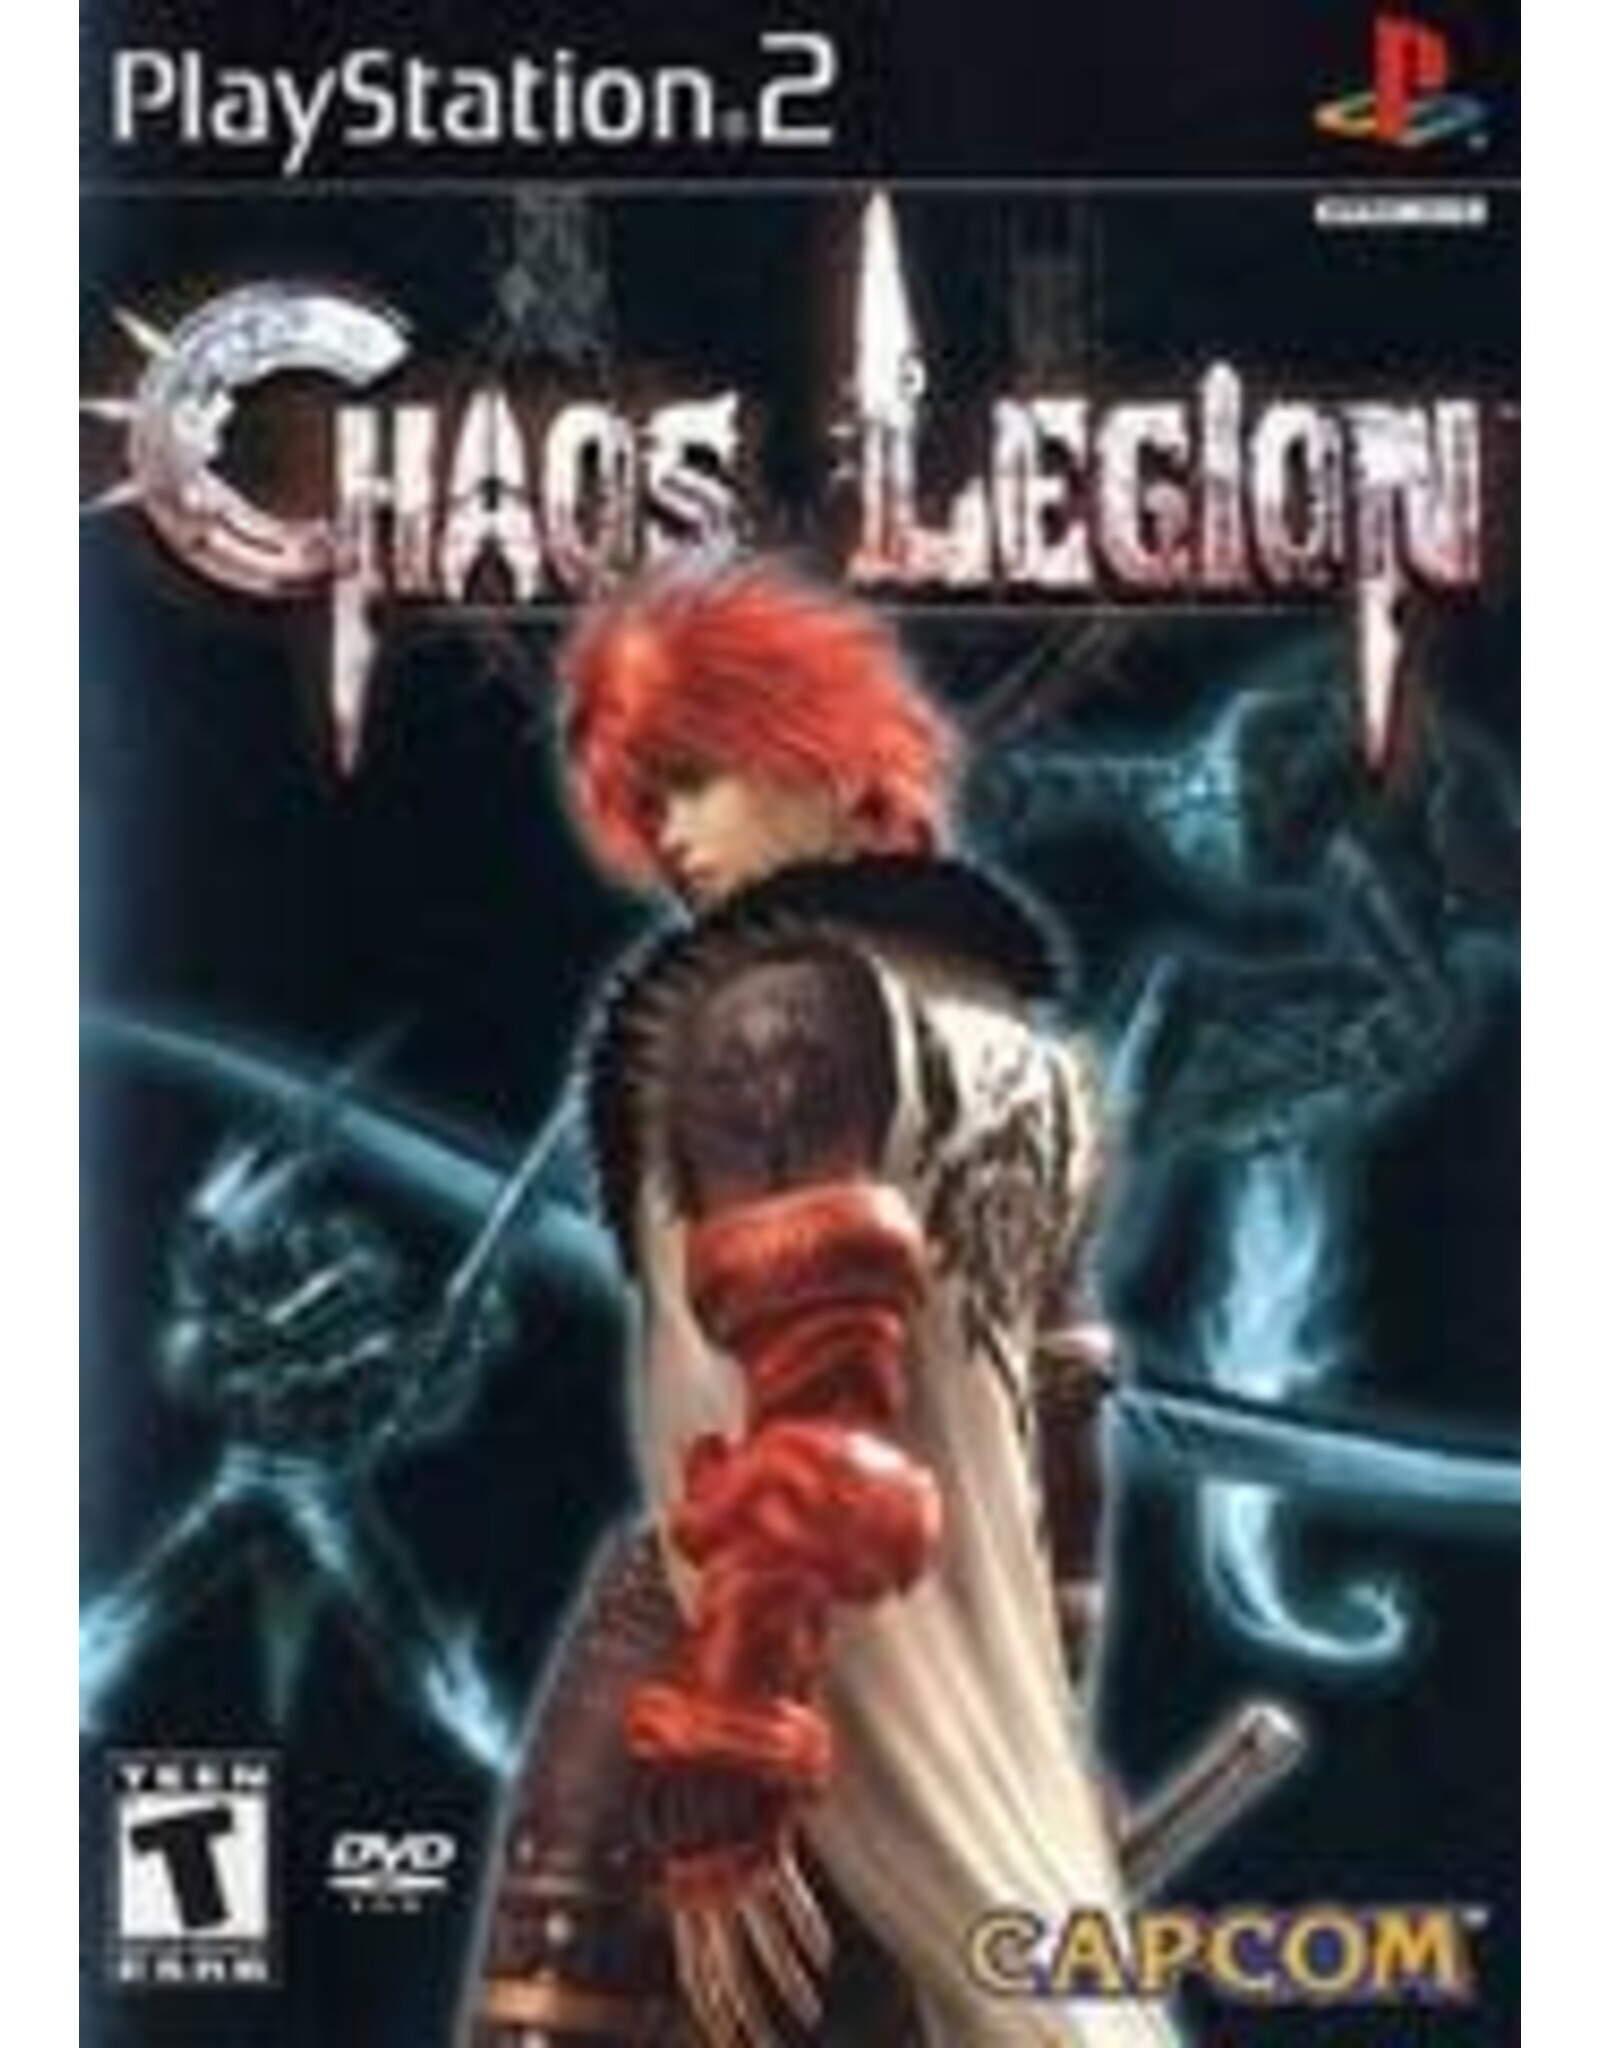 Playstation 2 Chaos Legion (No Manual)